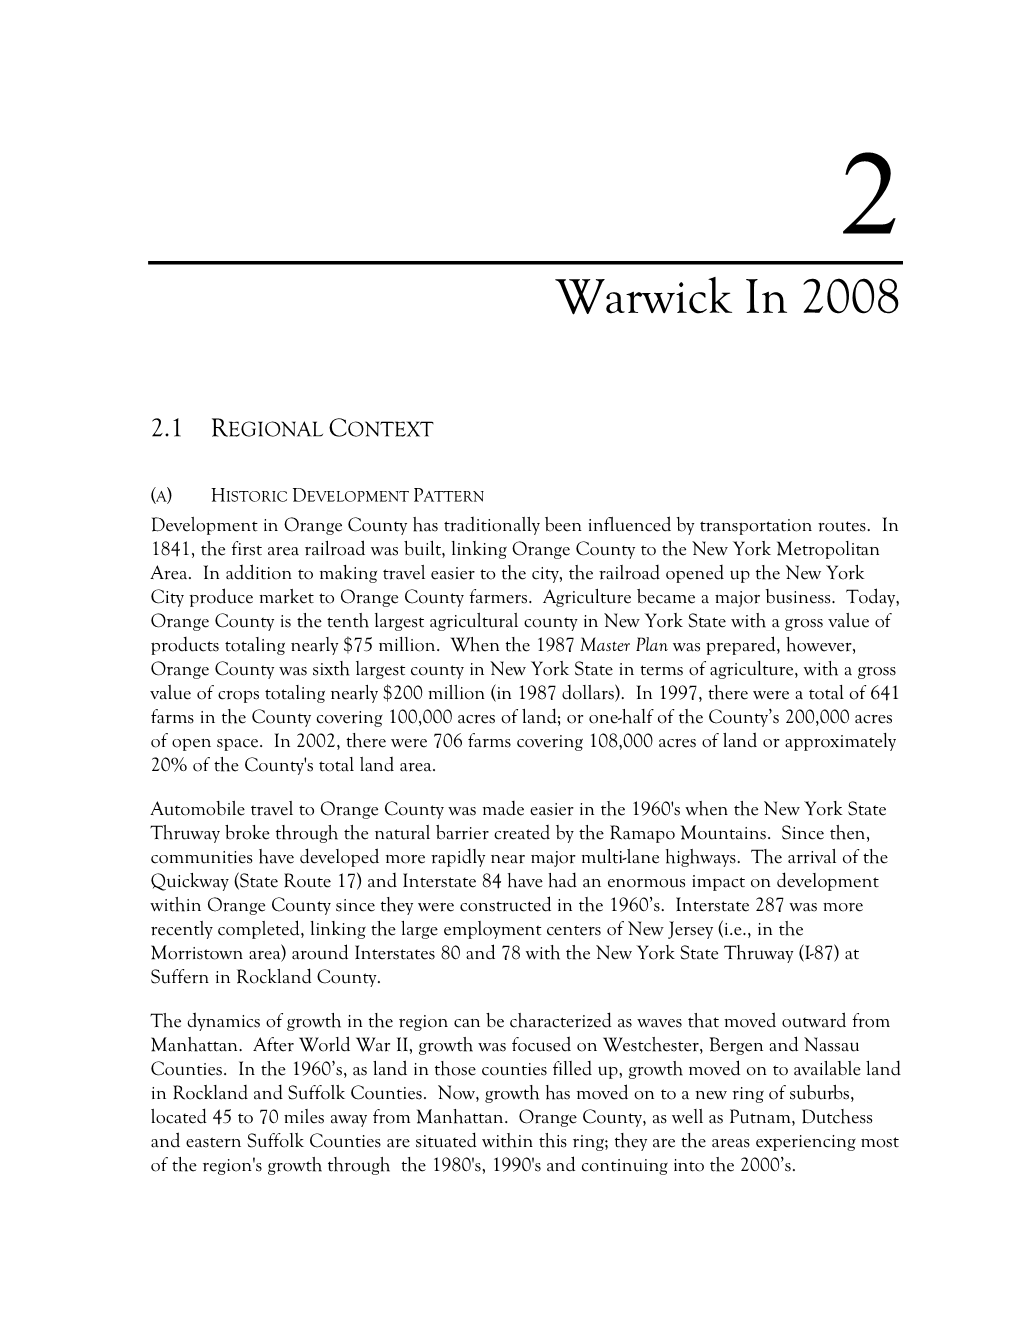 Warwick in 2008